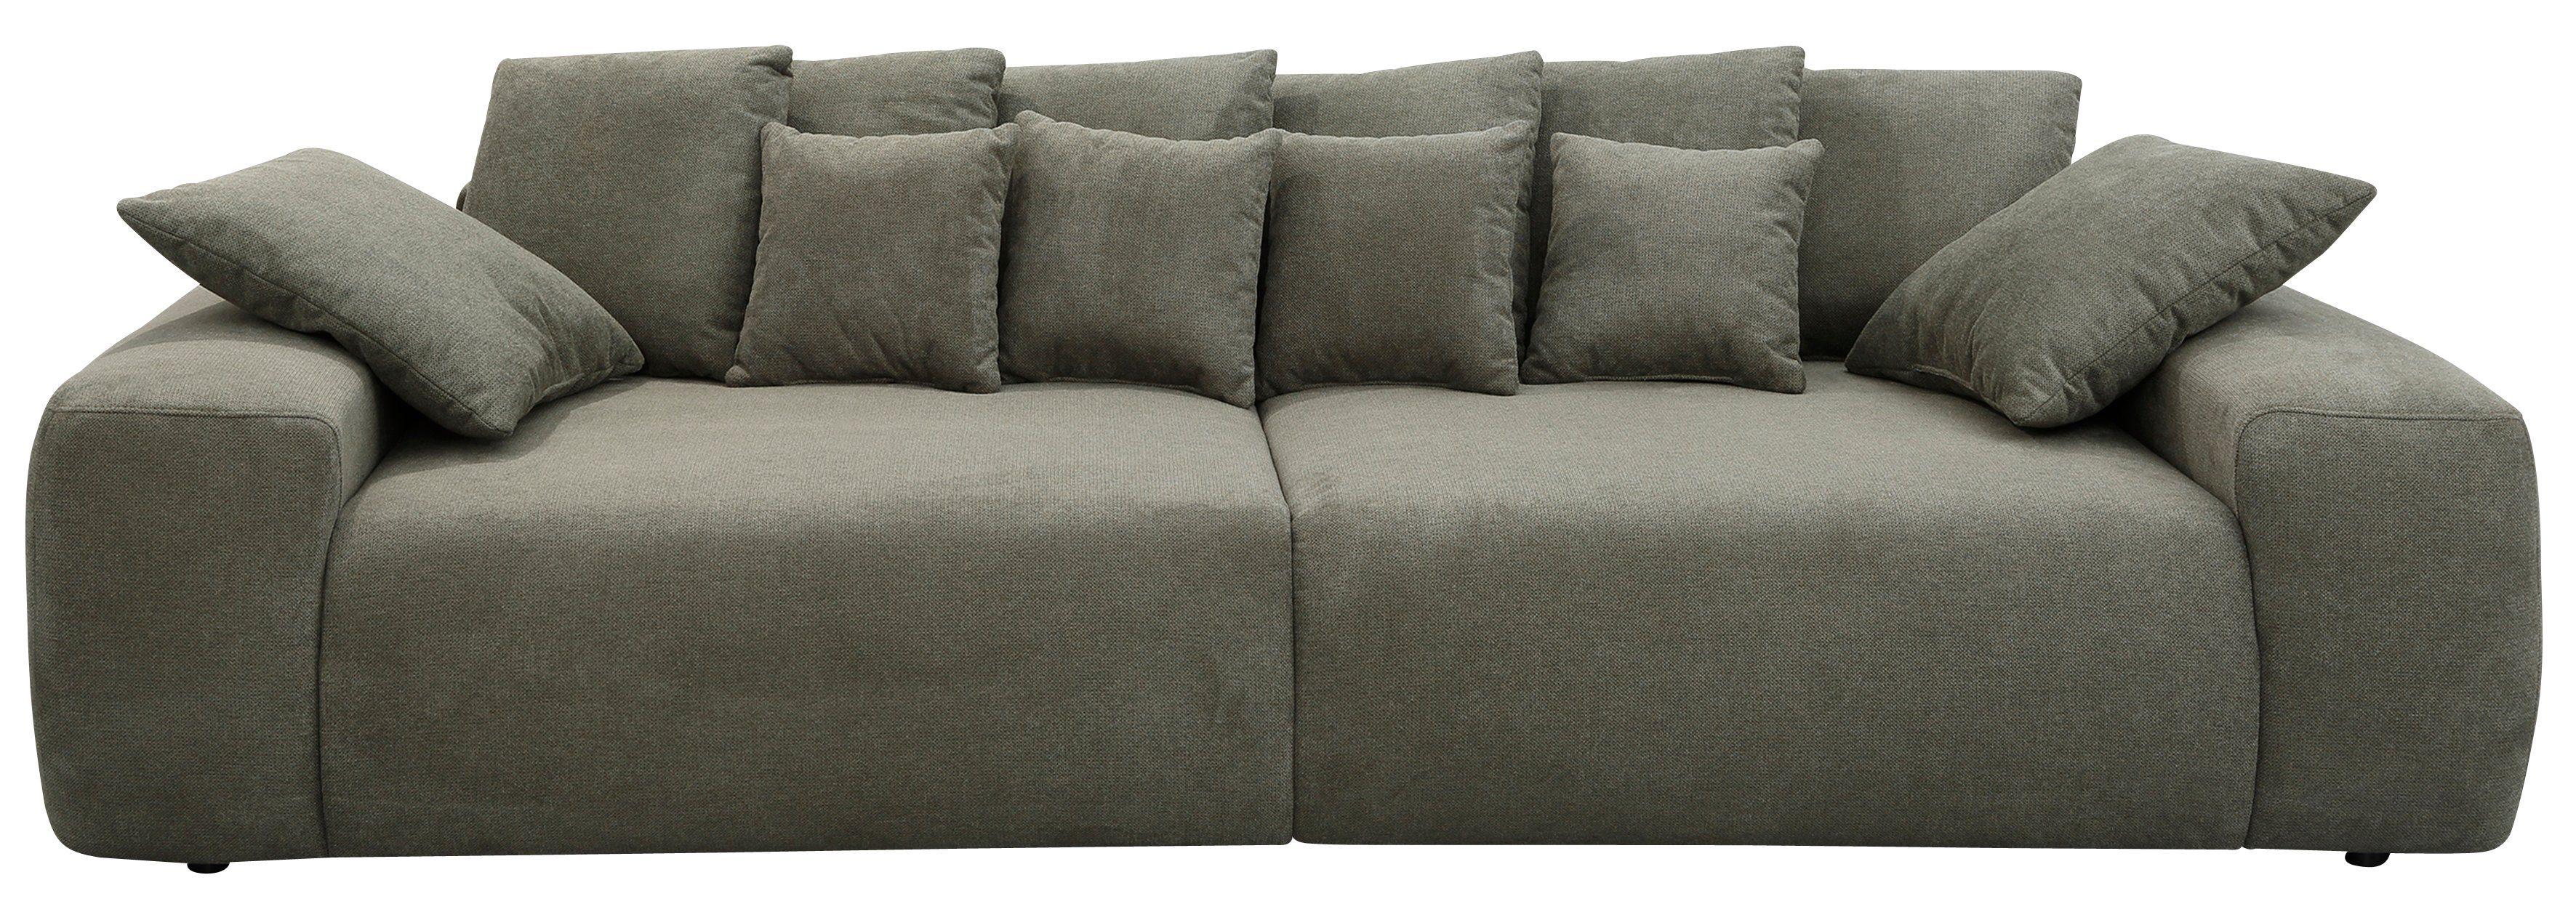 Home affaire Big-Sofa »Riveo«, Boxspringfederung, Breite 302 cm, Lounge Sofa  mit vielen losen Kissen, auch in Cord-Bezug online kaufen | OTTO